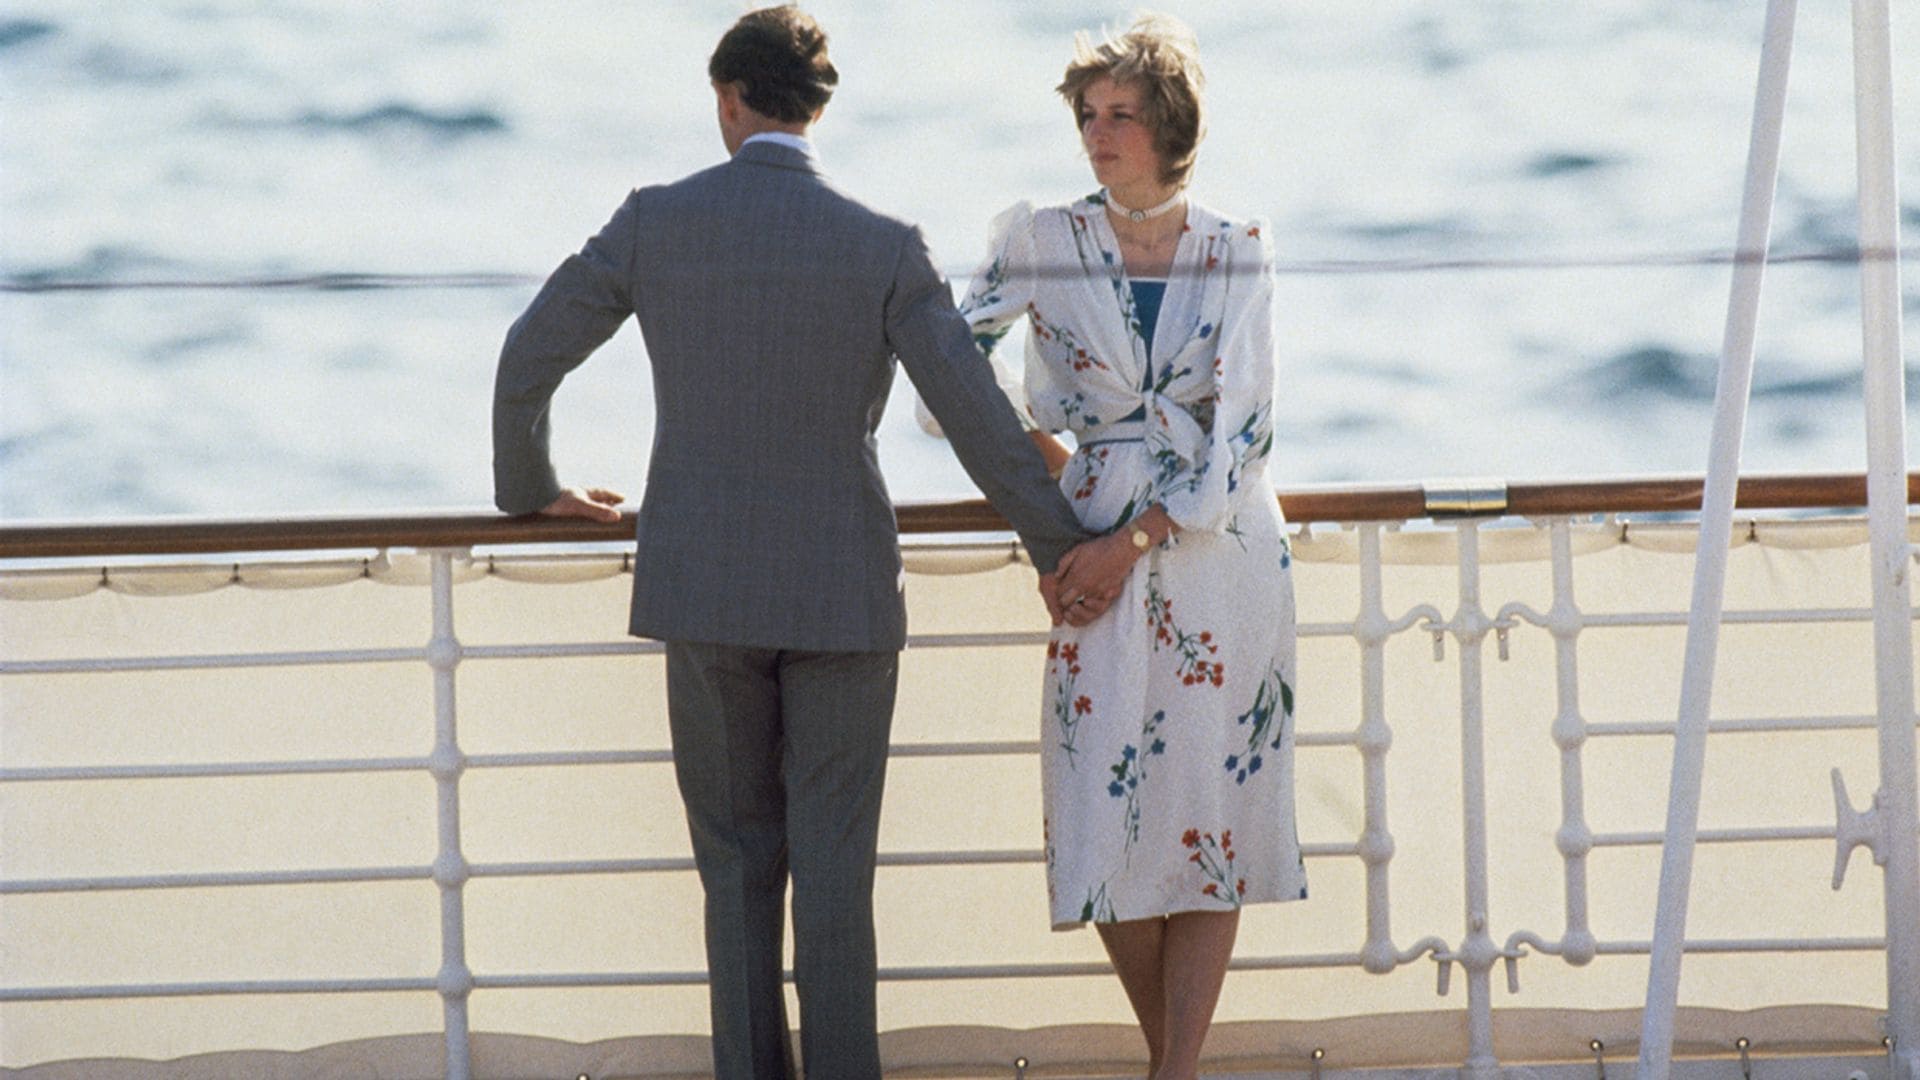 Diana de Gales llevó primero las dos tendencias de invitada que verás en bodas y bautizos